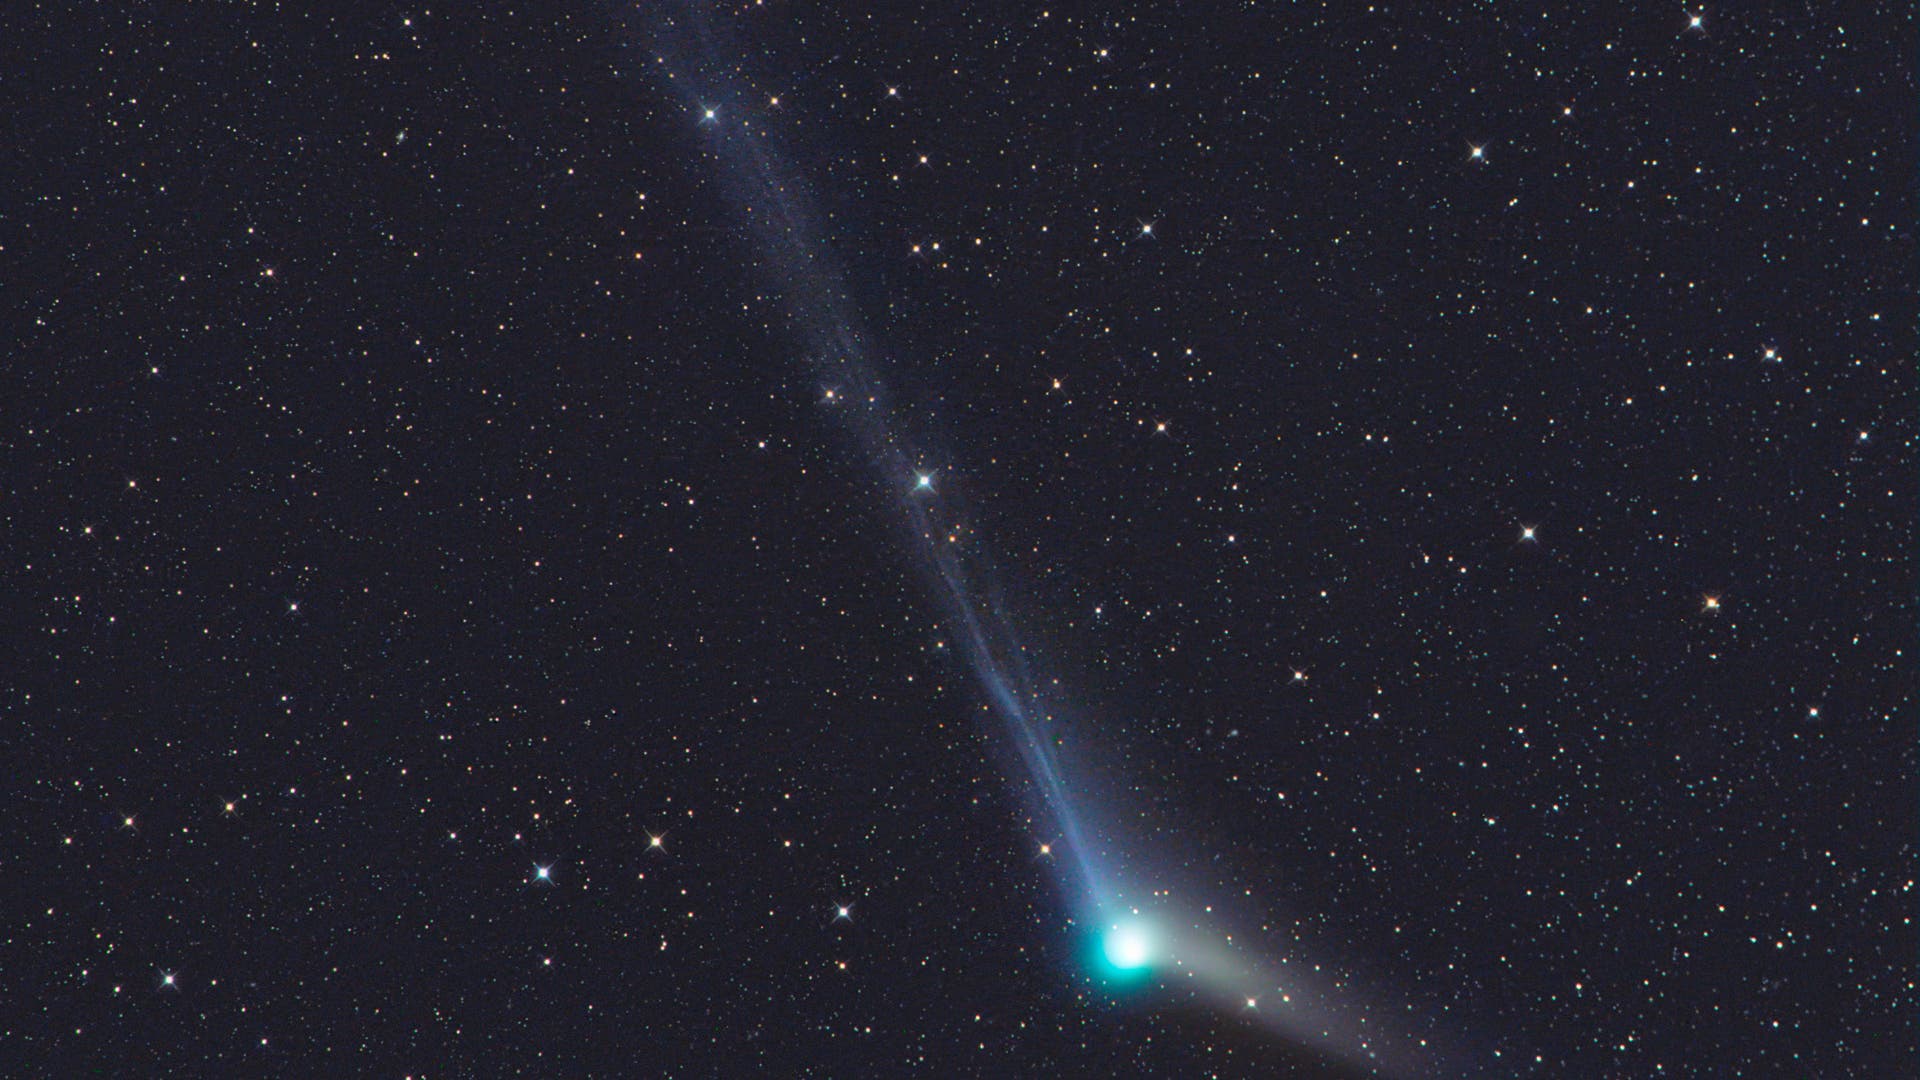 Komet Catalina am 20. Dezember 2015 (Aufnahme von Gerald Rhemann)